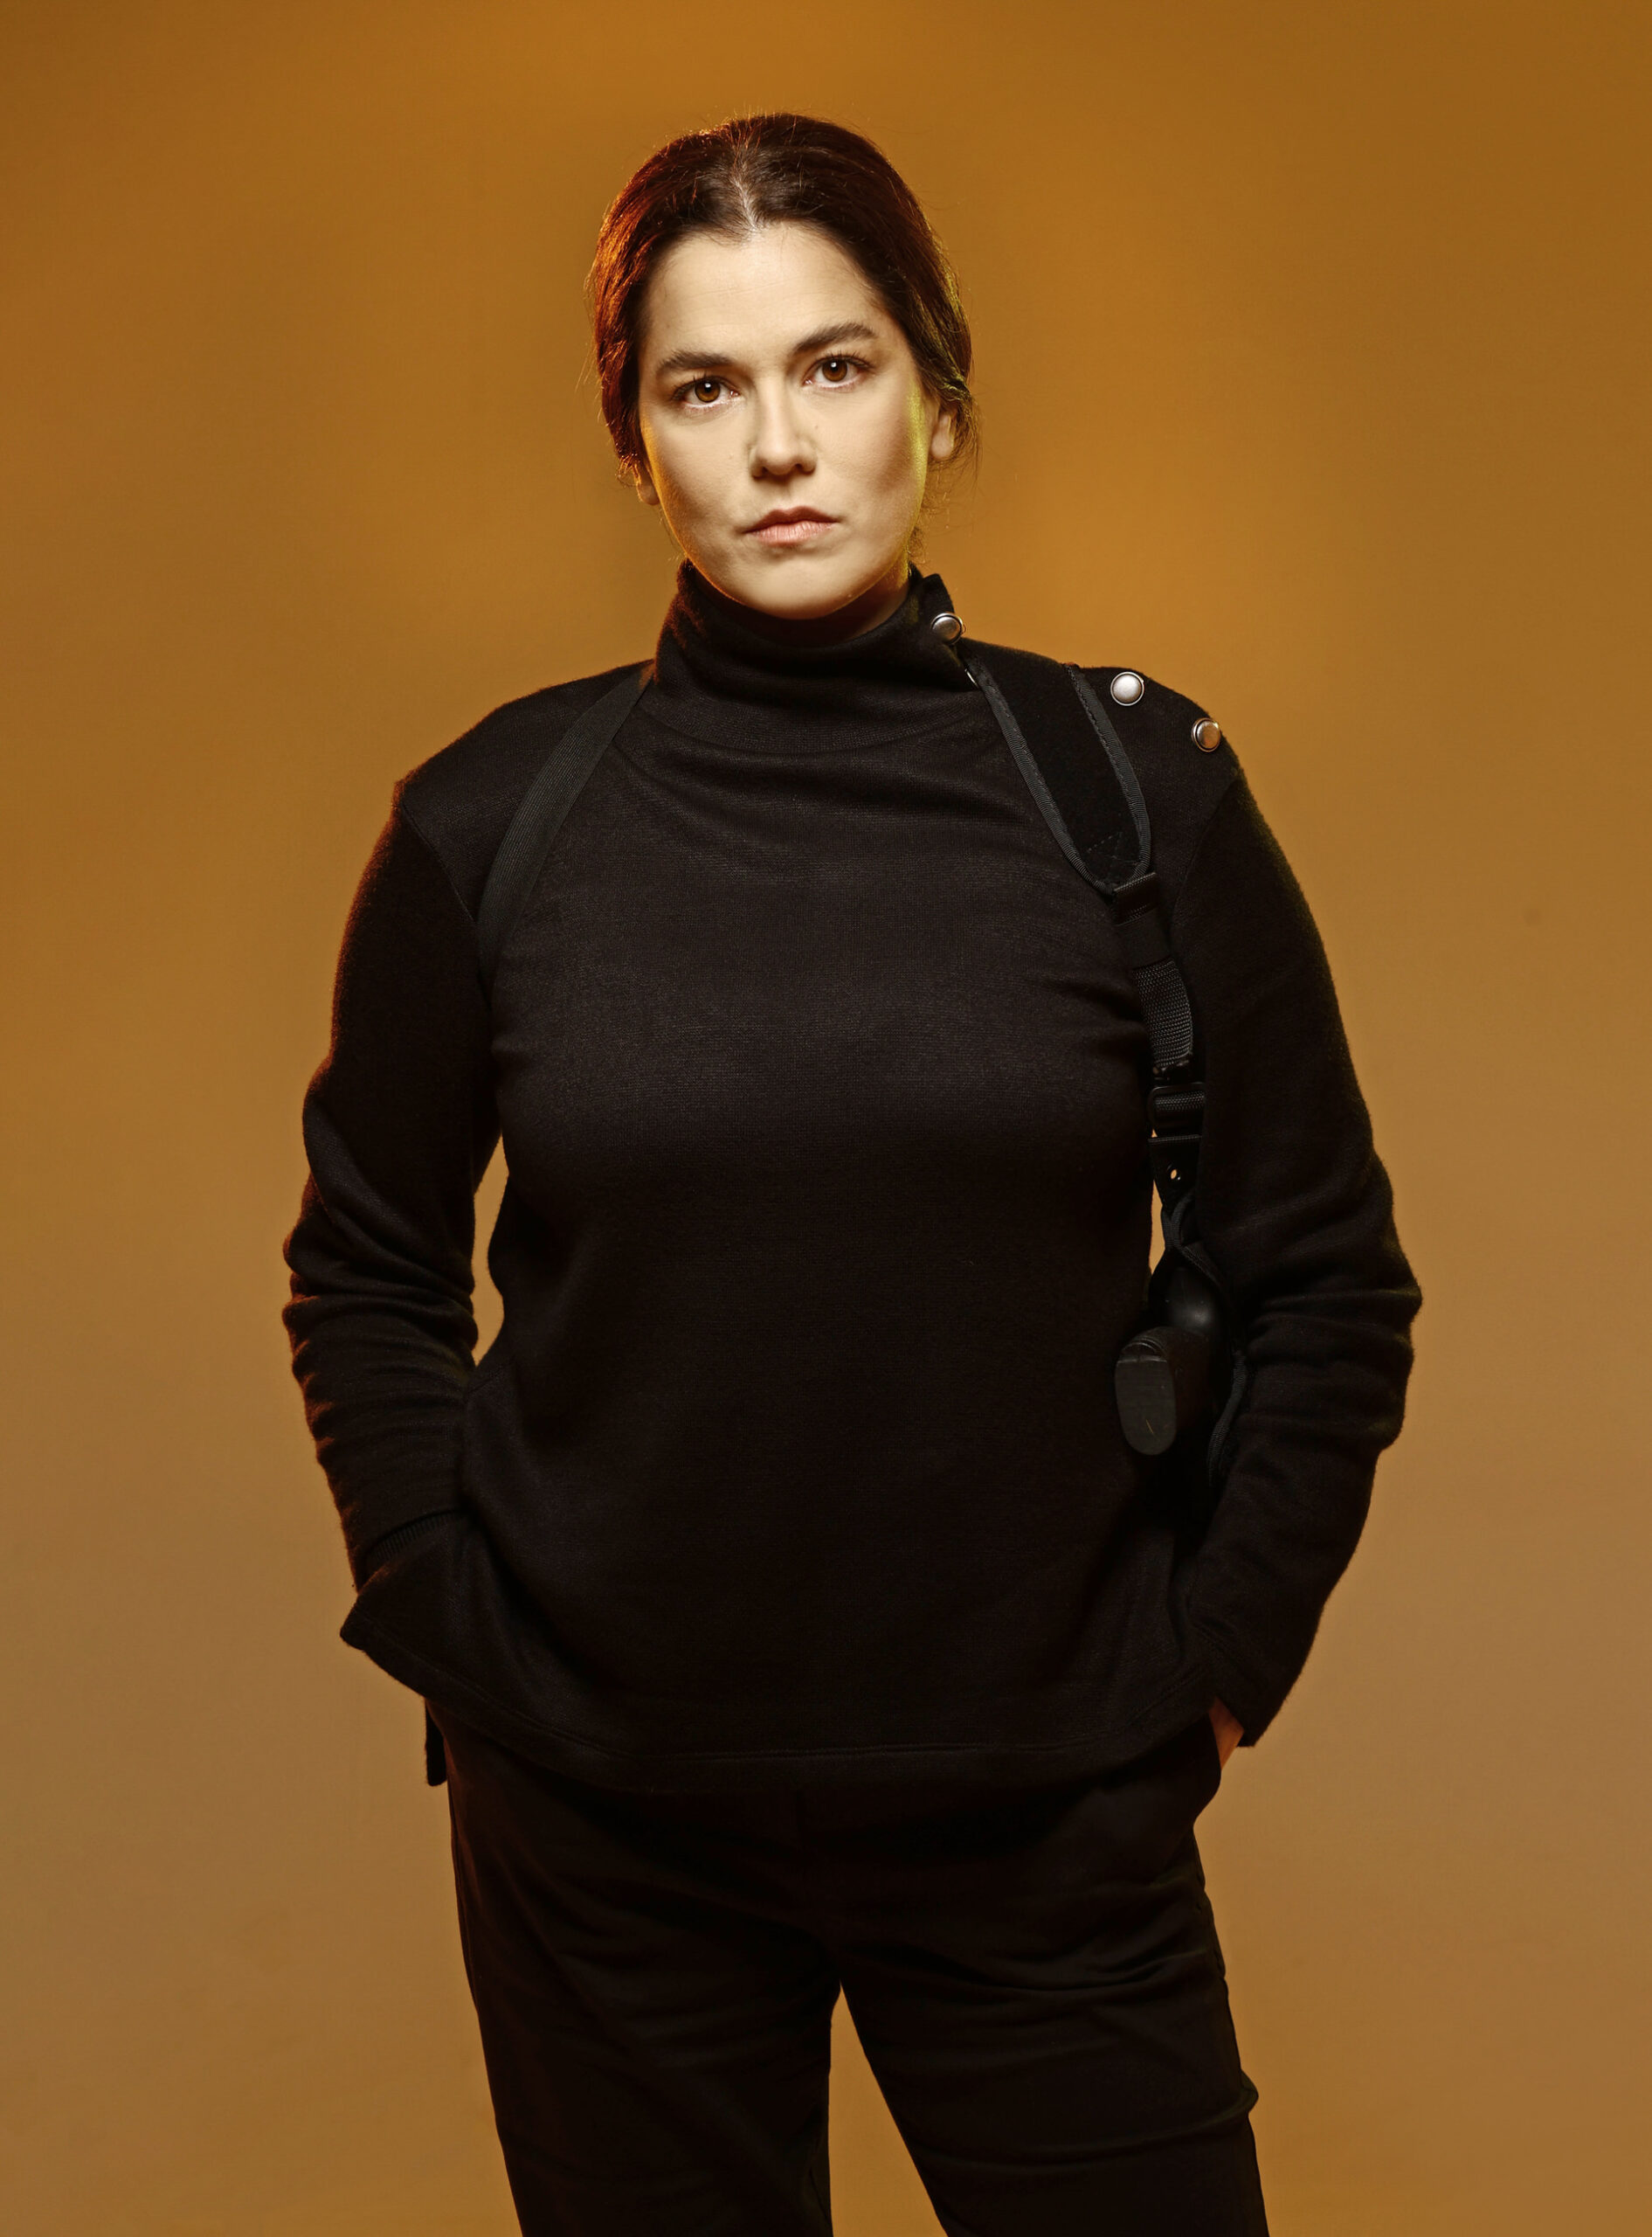 Η Μαρία Παπαφωτίου μιλάει στο travelgirl.gr για το ρόλο της στη νέα σειρά του Alpha "Σκαραβαίος"